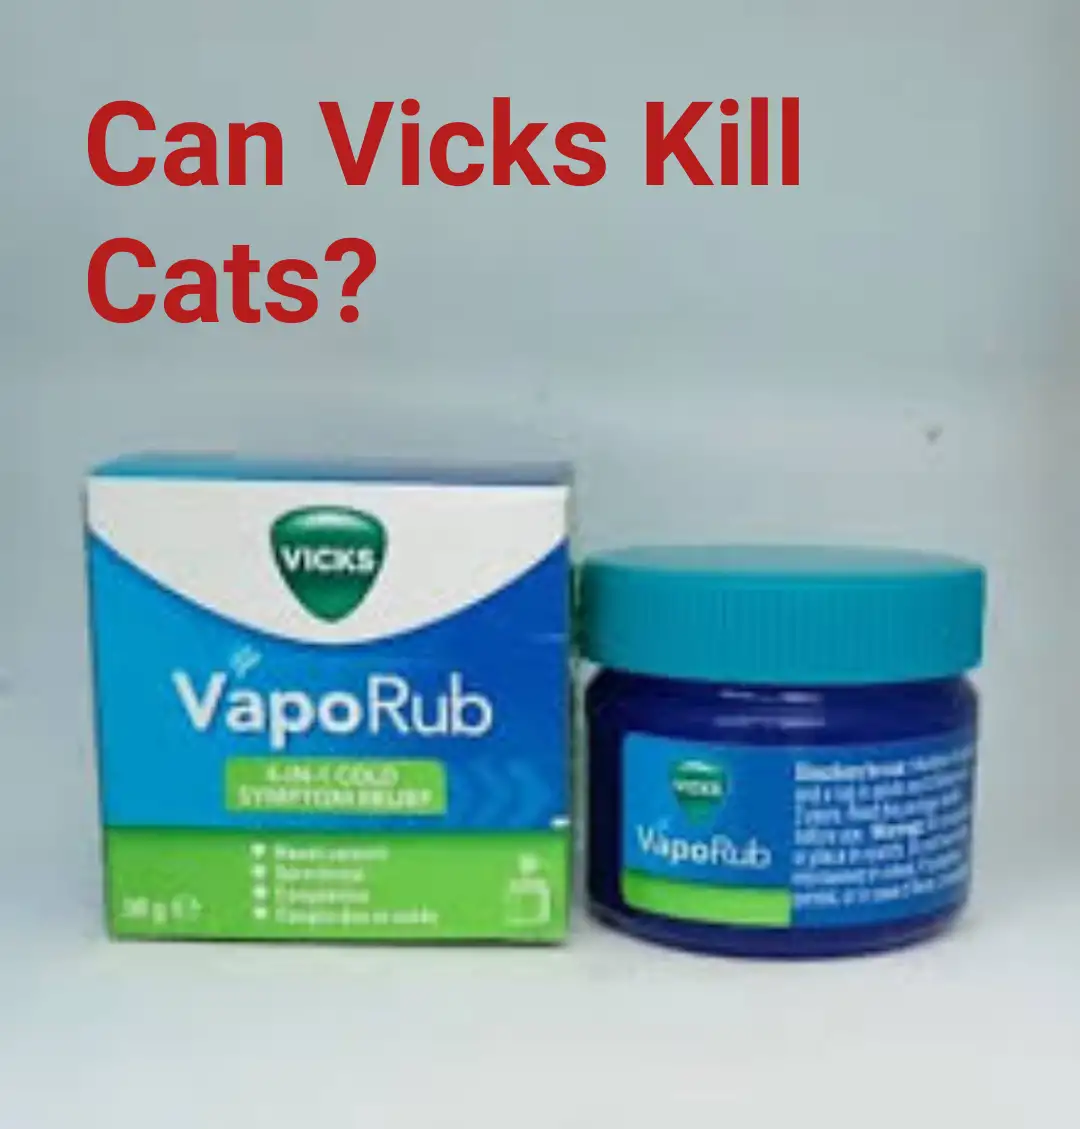 Can Vicks Kill Cats?